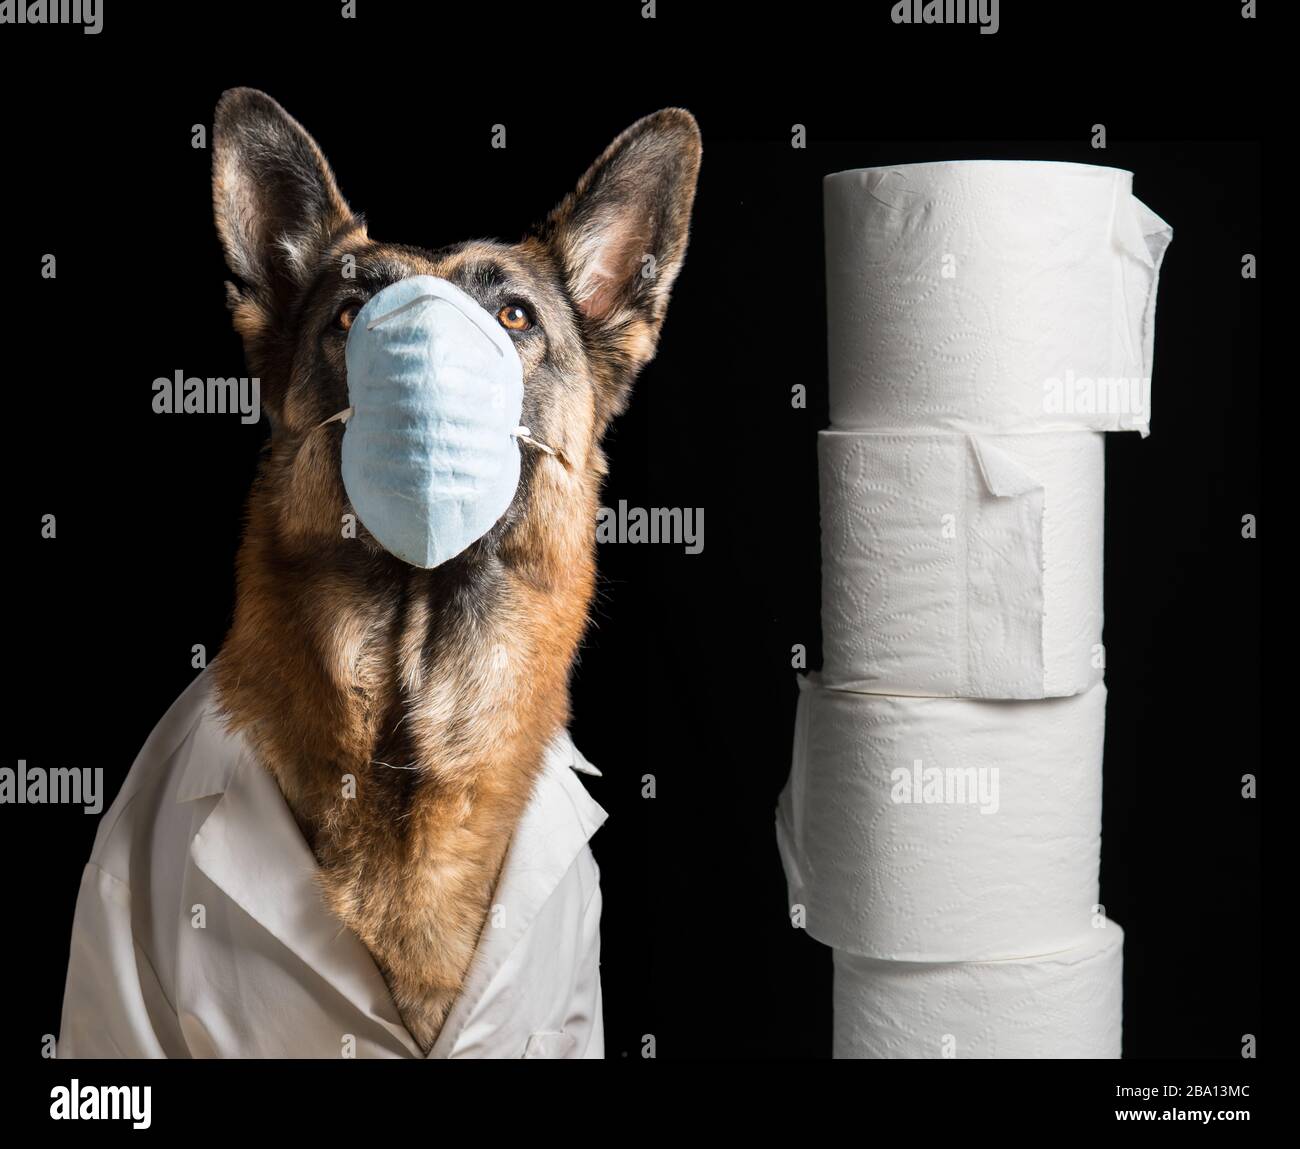 Masque médical du virus Corona sur le chien avec revêtement pour les genoux et papier toilette. Le Berger allemand concept sur les animaux contre le coronavirus covid19 Banque D'Images